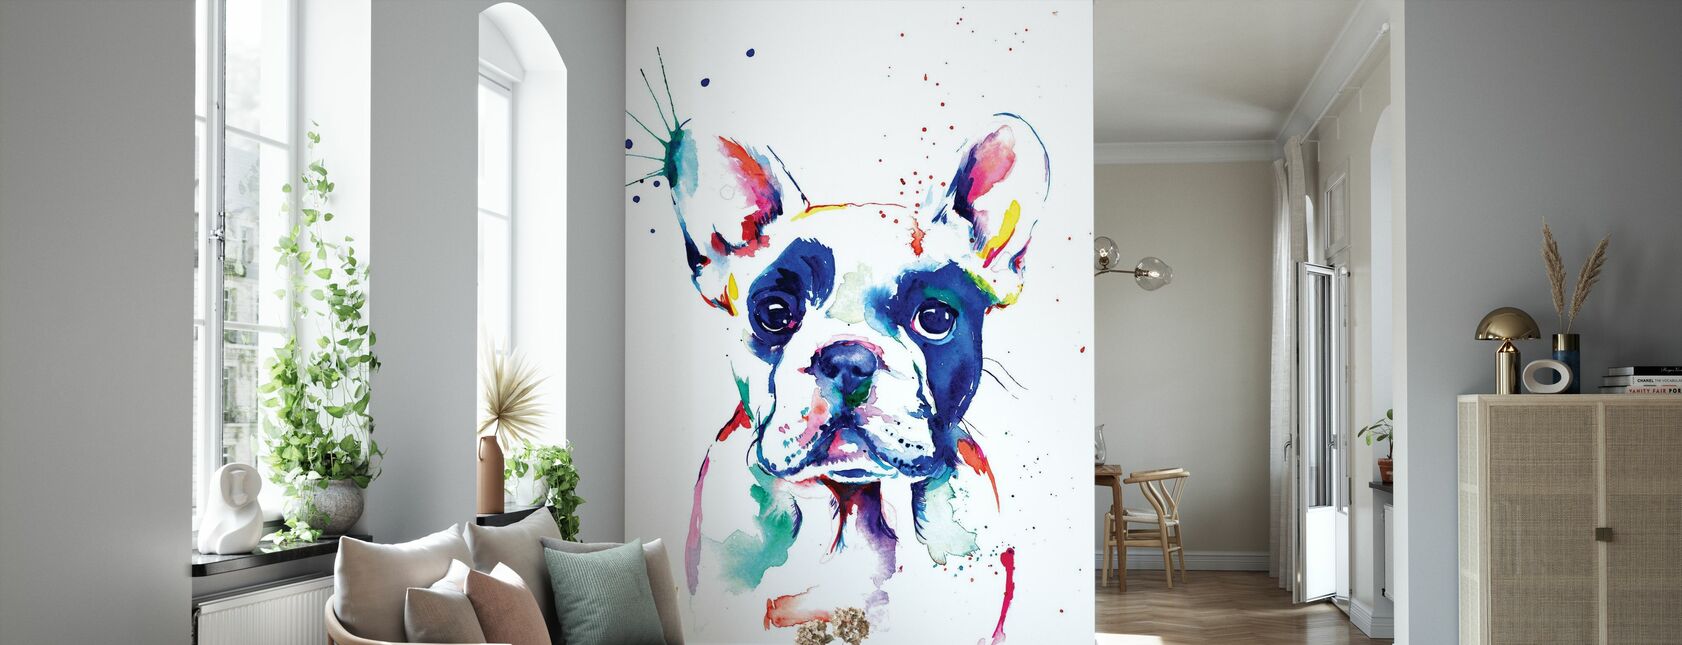 Frenchie - Wallpaper - Living Room